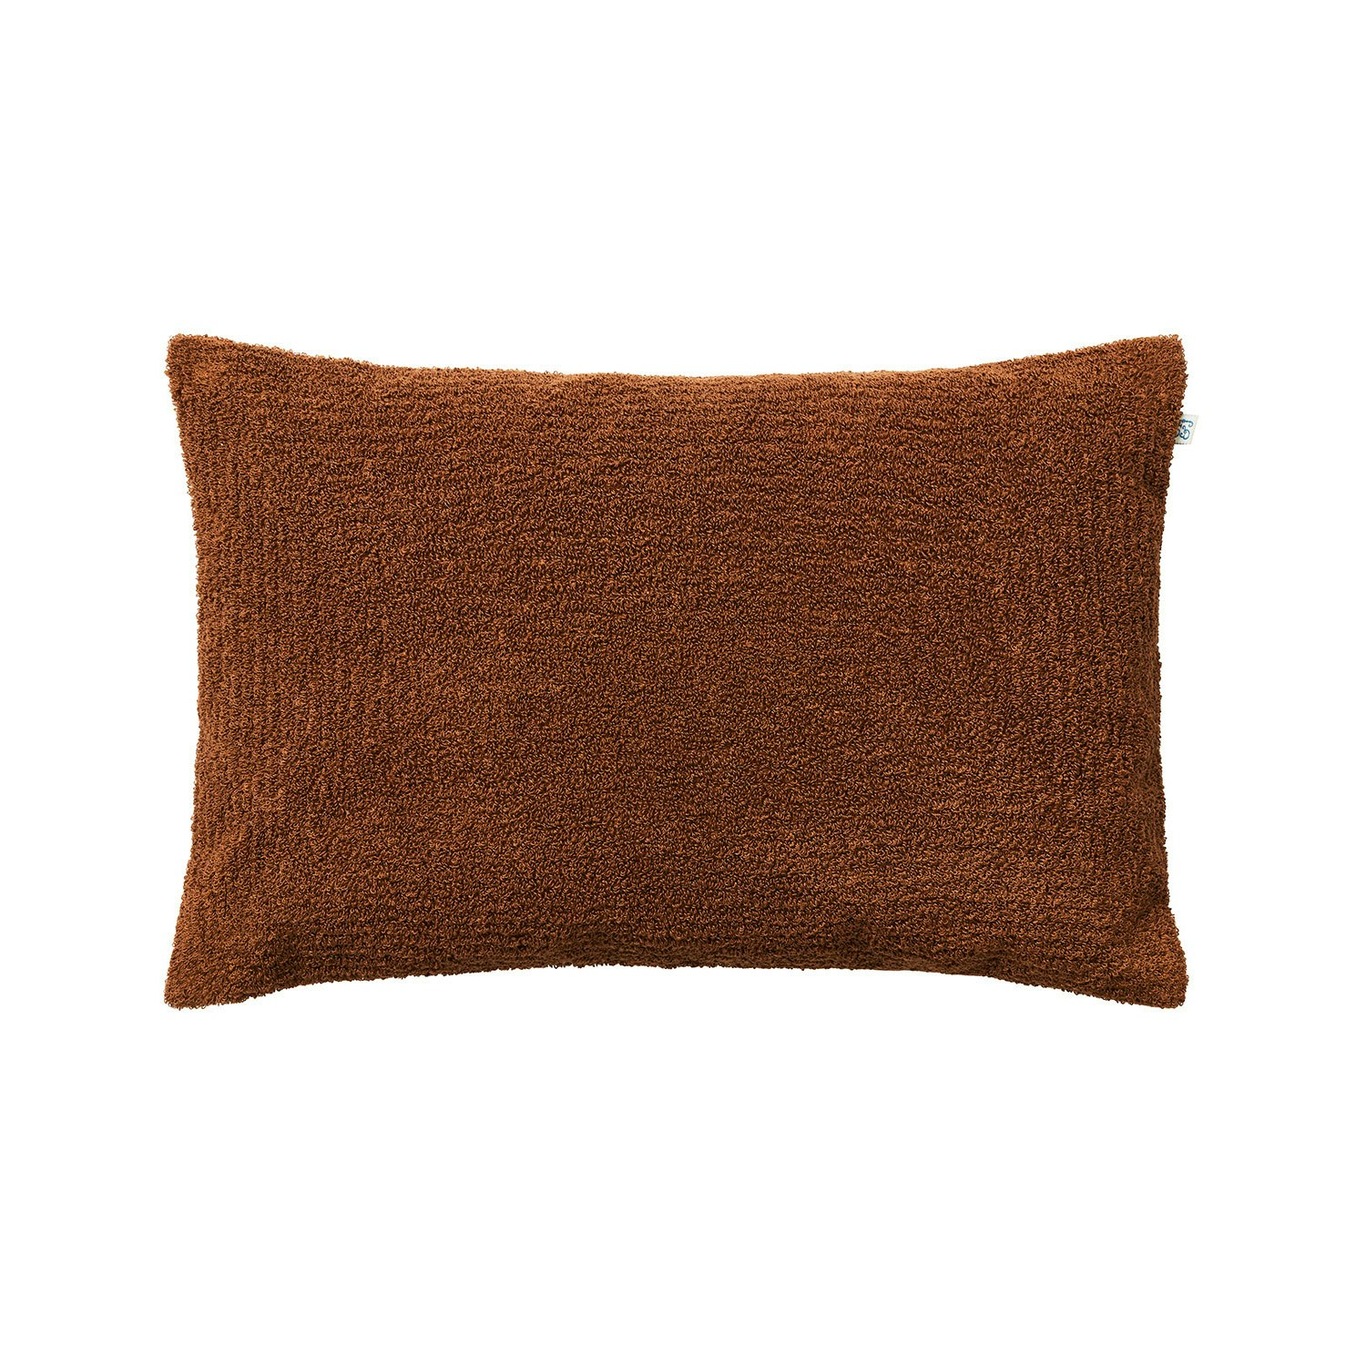 Mani Cushion Cover Bouclé 40x60 cm, Cognac